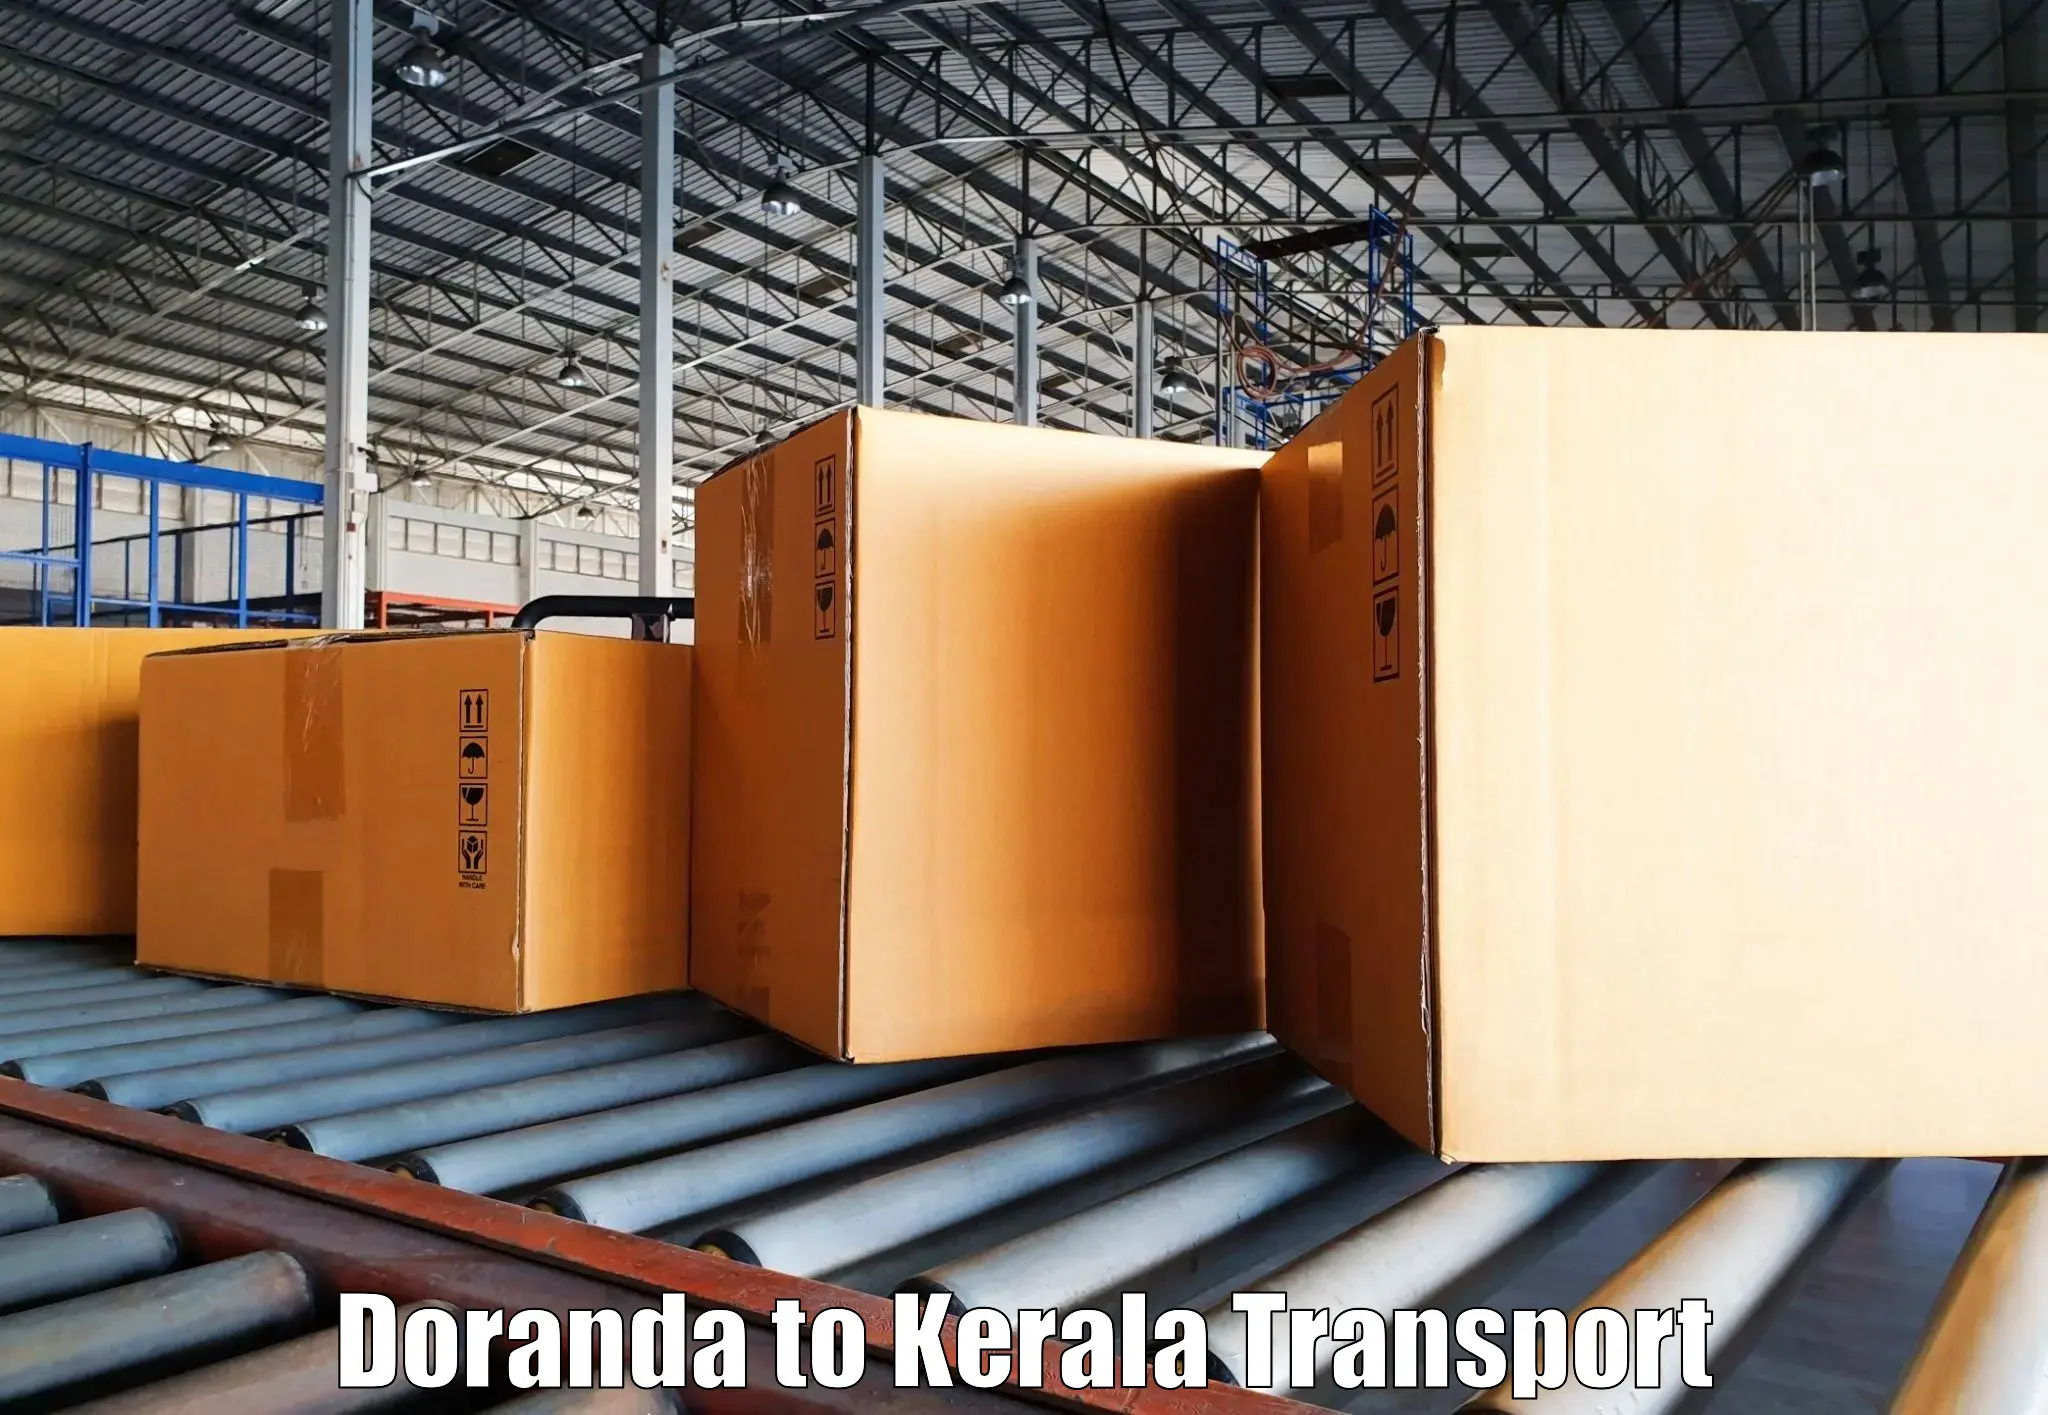 Daily transport service Doranda to Kuthuparamba